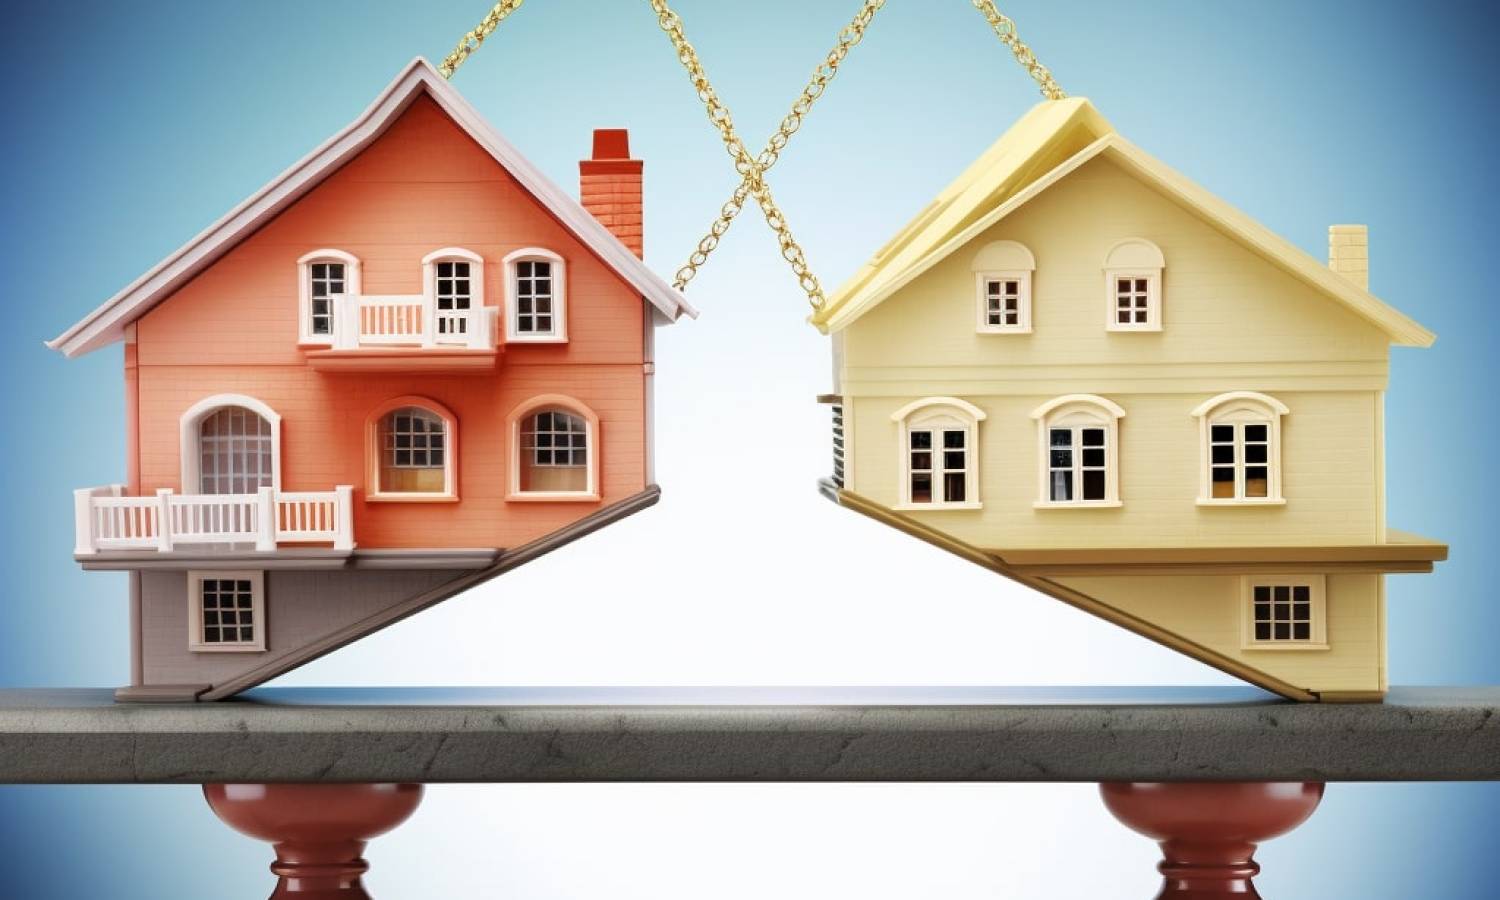 Bridging Lending Slows As Mortgage Rates Impact Housing Market